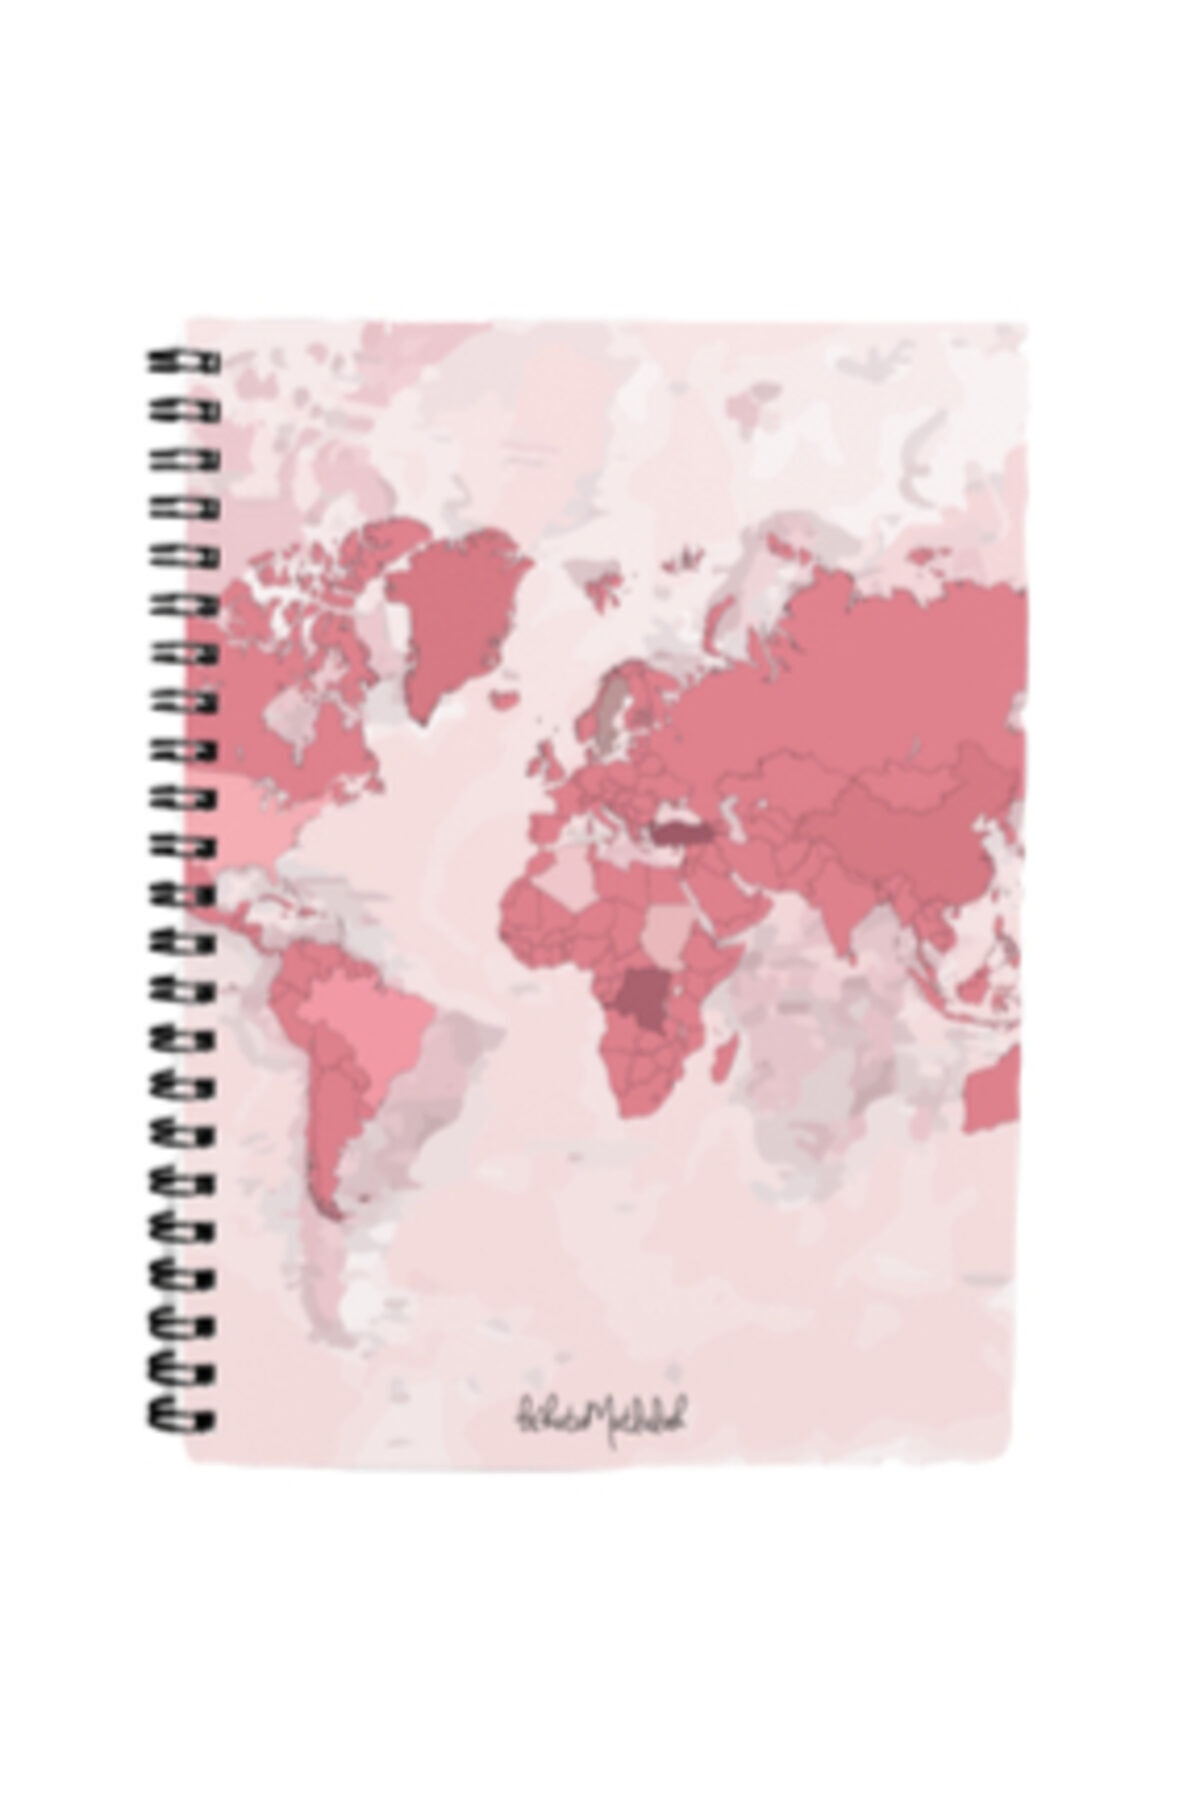 Bikutumutluluk Hediyelik - N012 A5 Tasarım Spiralli Defter - Dünya Haritalı